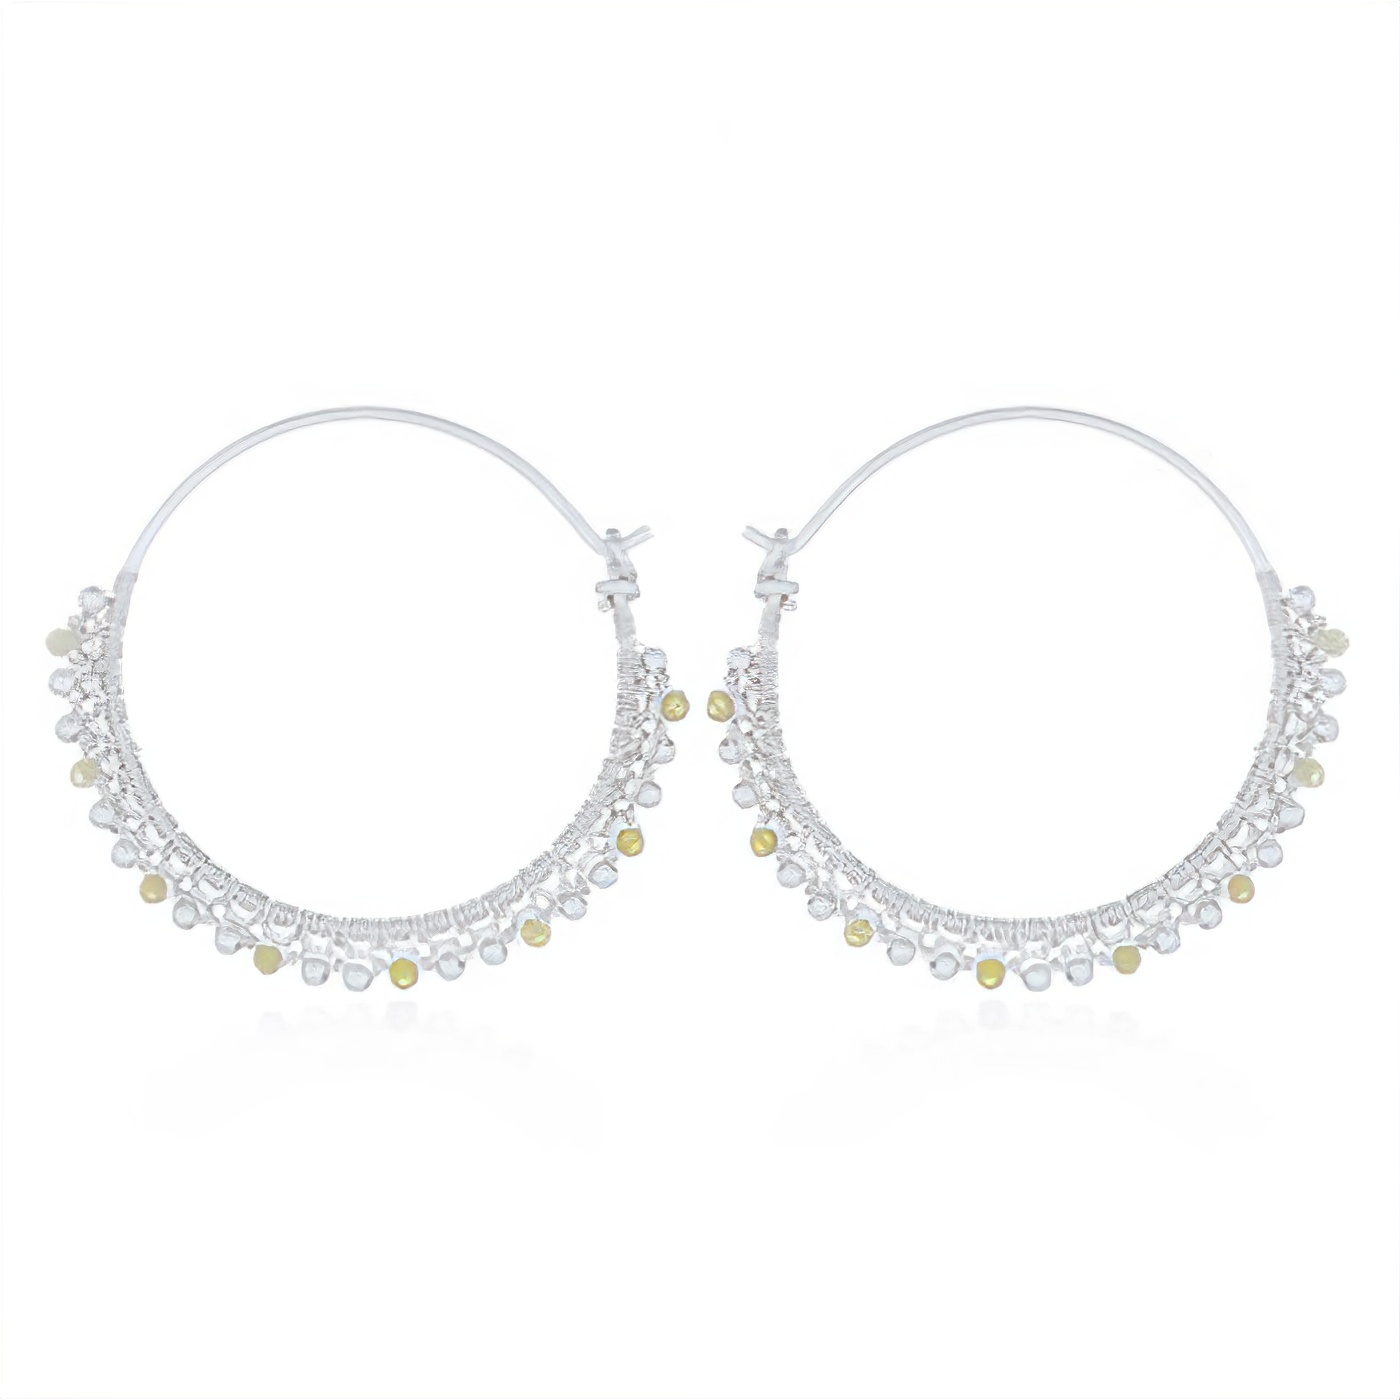 Yellow Opal And Spheres Threaded Silver Hoop Earrings by BeYindi 